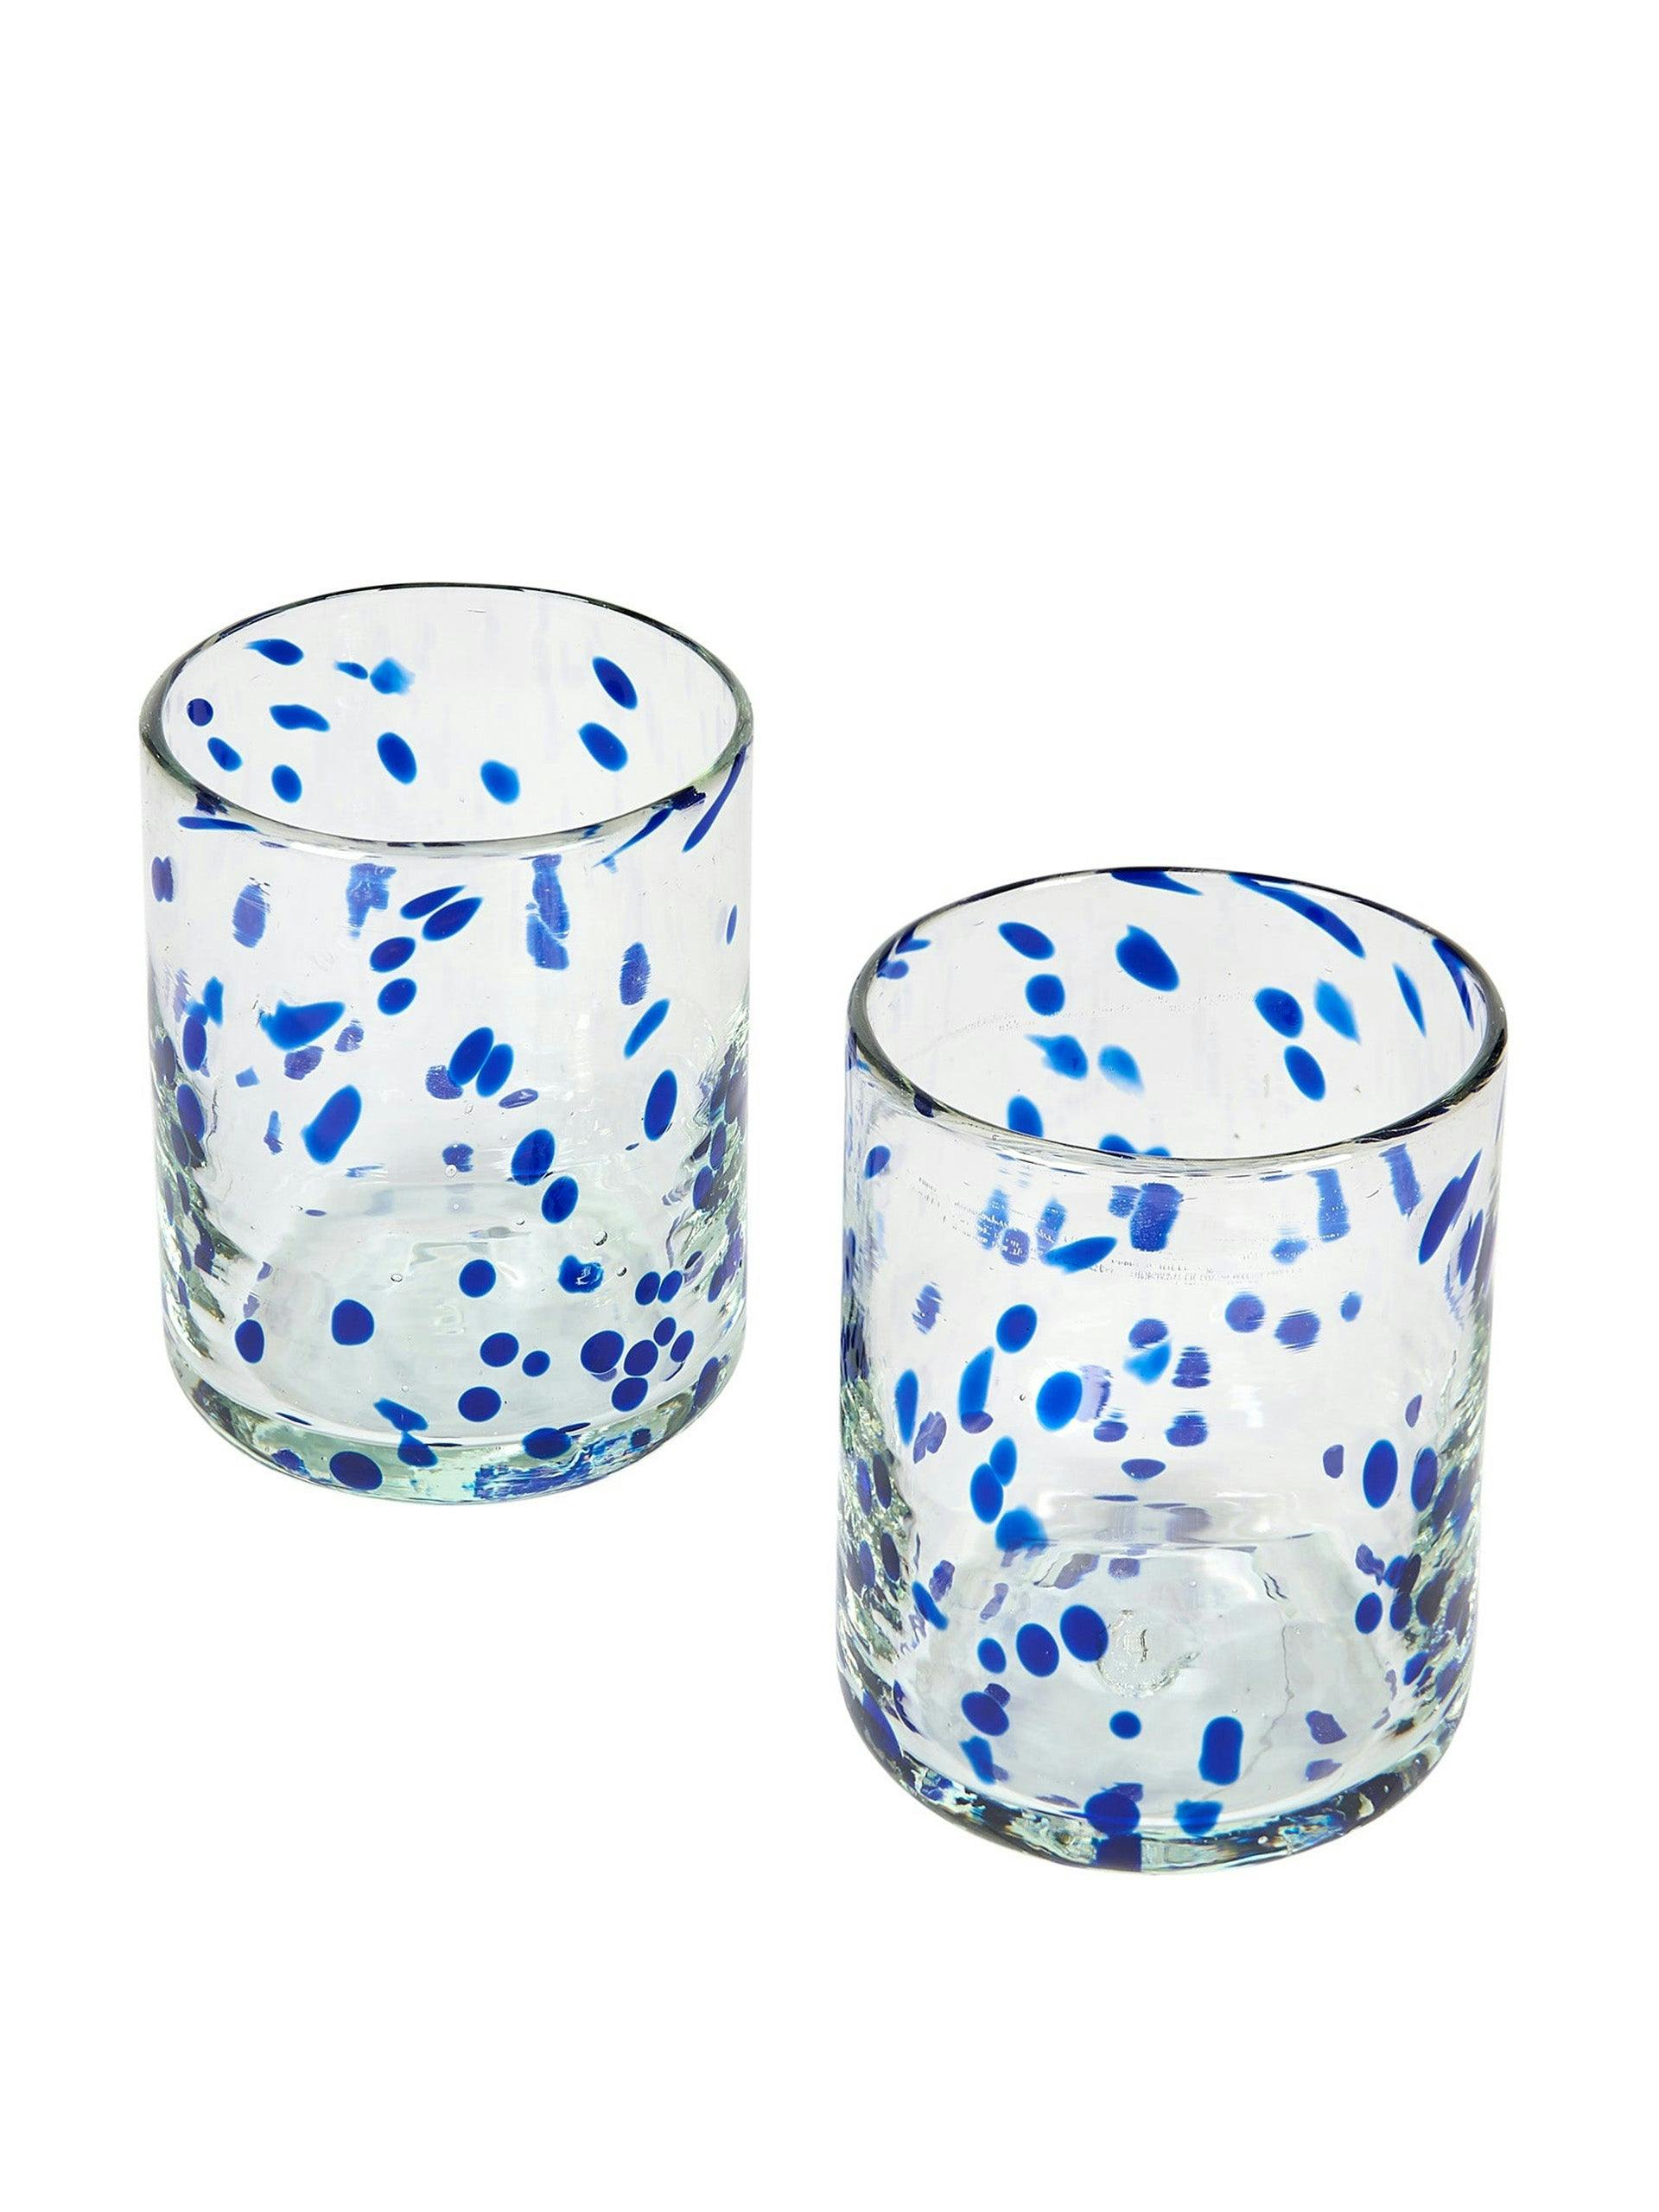 Blue confetti Murano glass tumbler